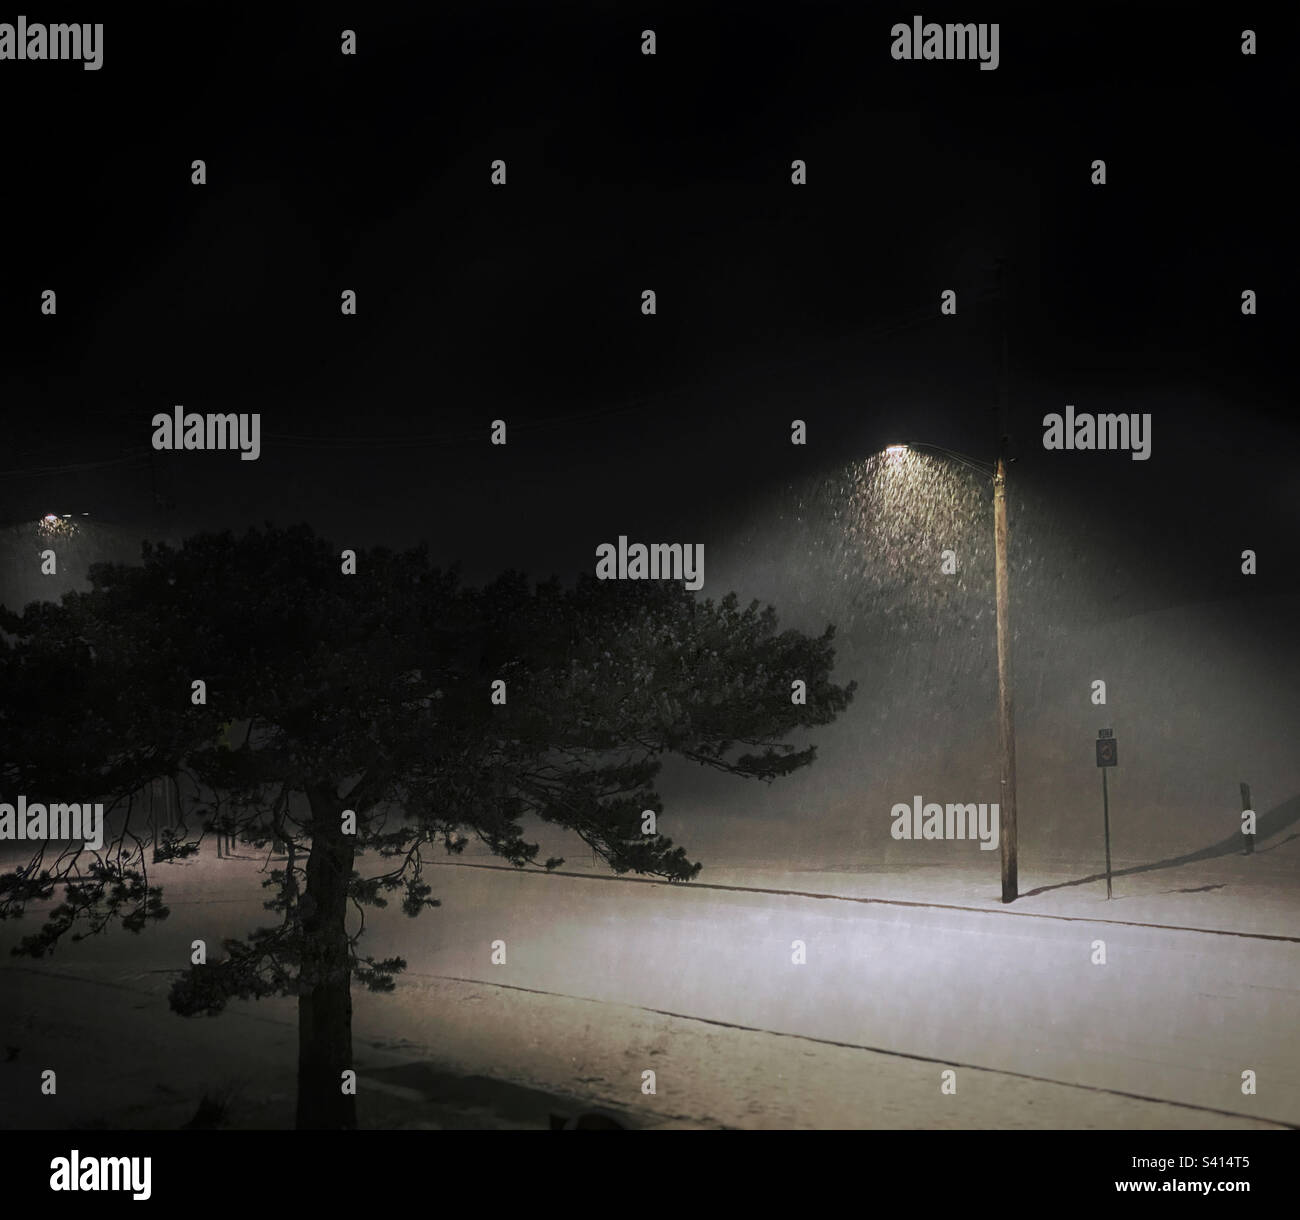 La neve cade in coni di luce sotto i lampioni in una tranquilla notte d'inverno Foto Stock